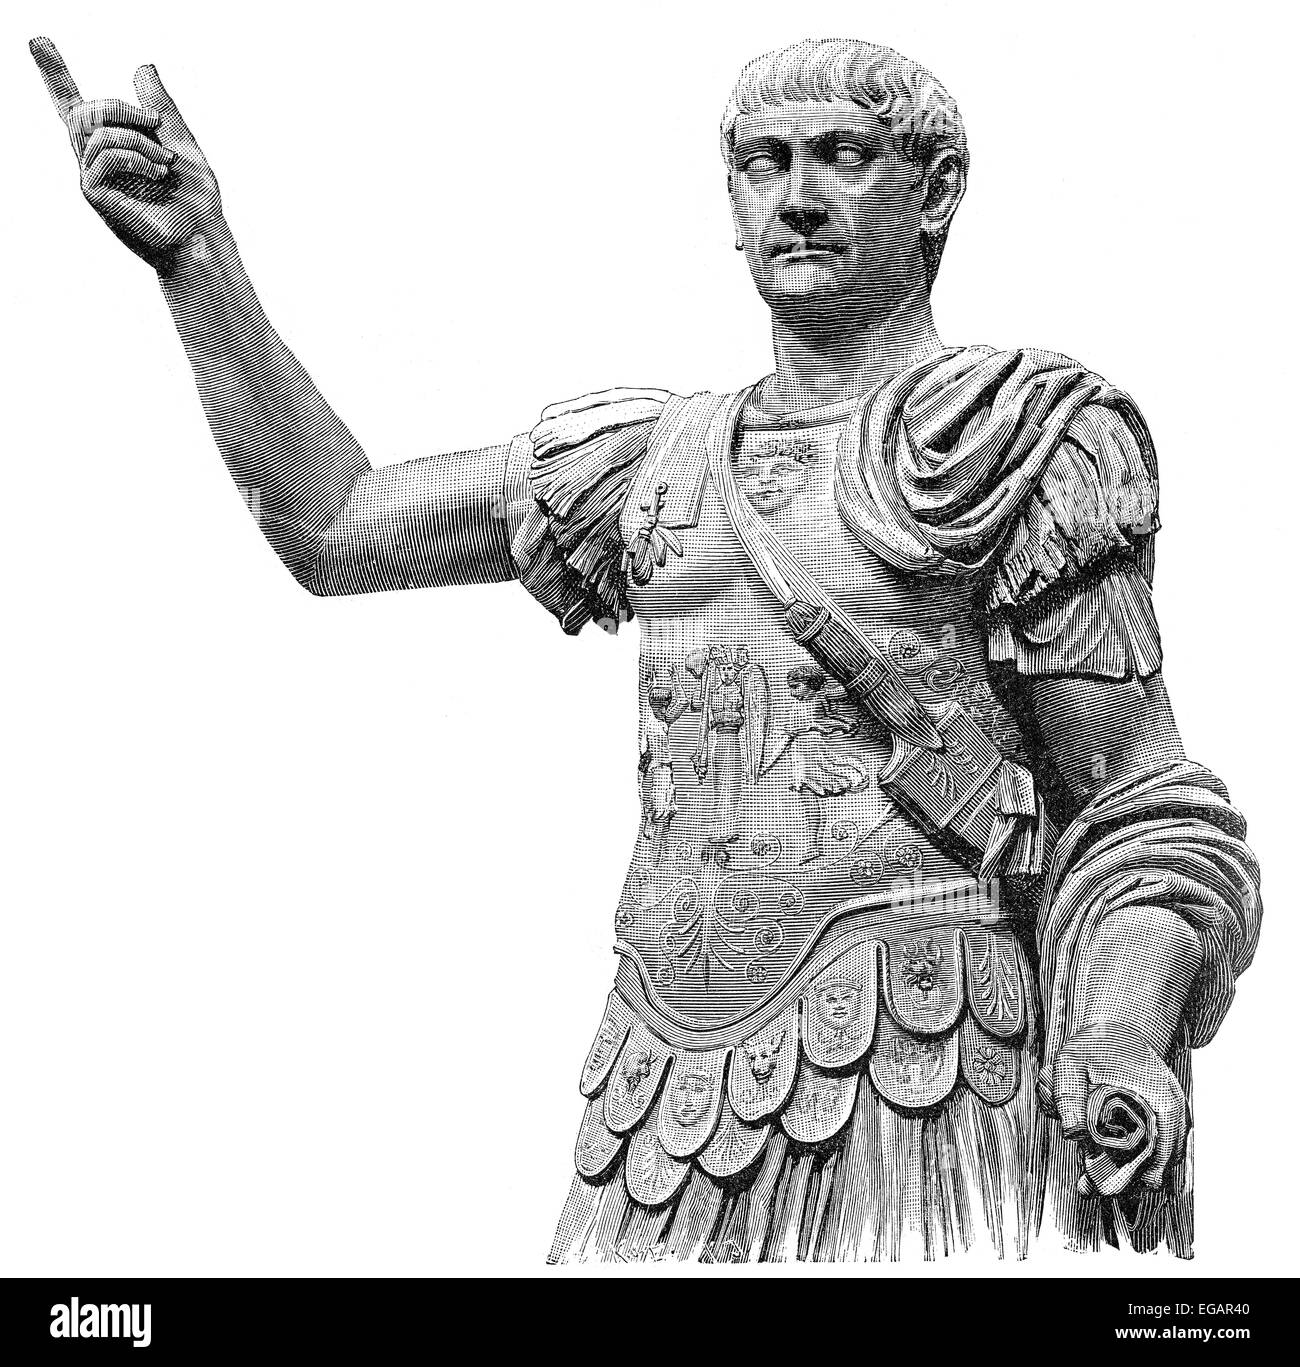 Trajan, Marcus Ulpius Traianus, Imperator Caesar Nerva Traianus Divi Nervae filius Augustus; 53 - 117, Roman emperor Stock Photo